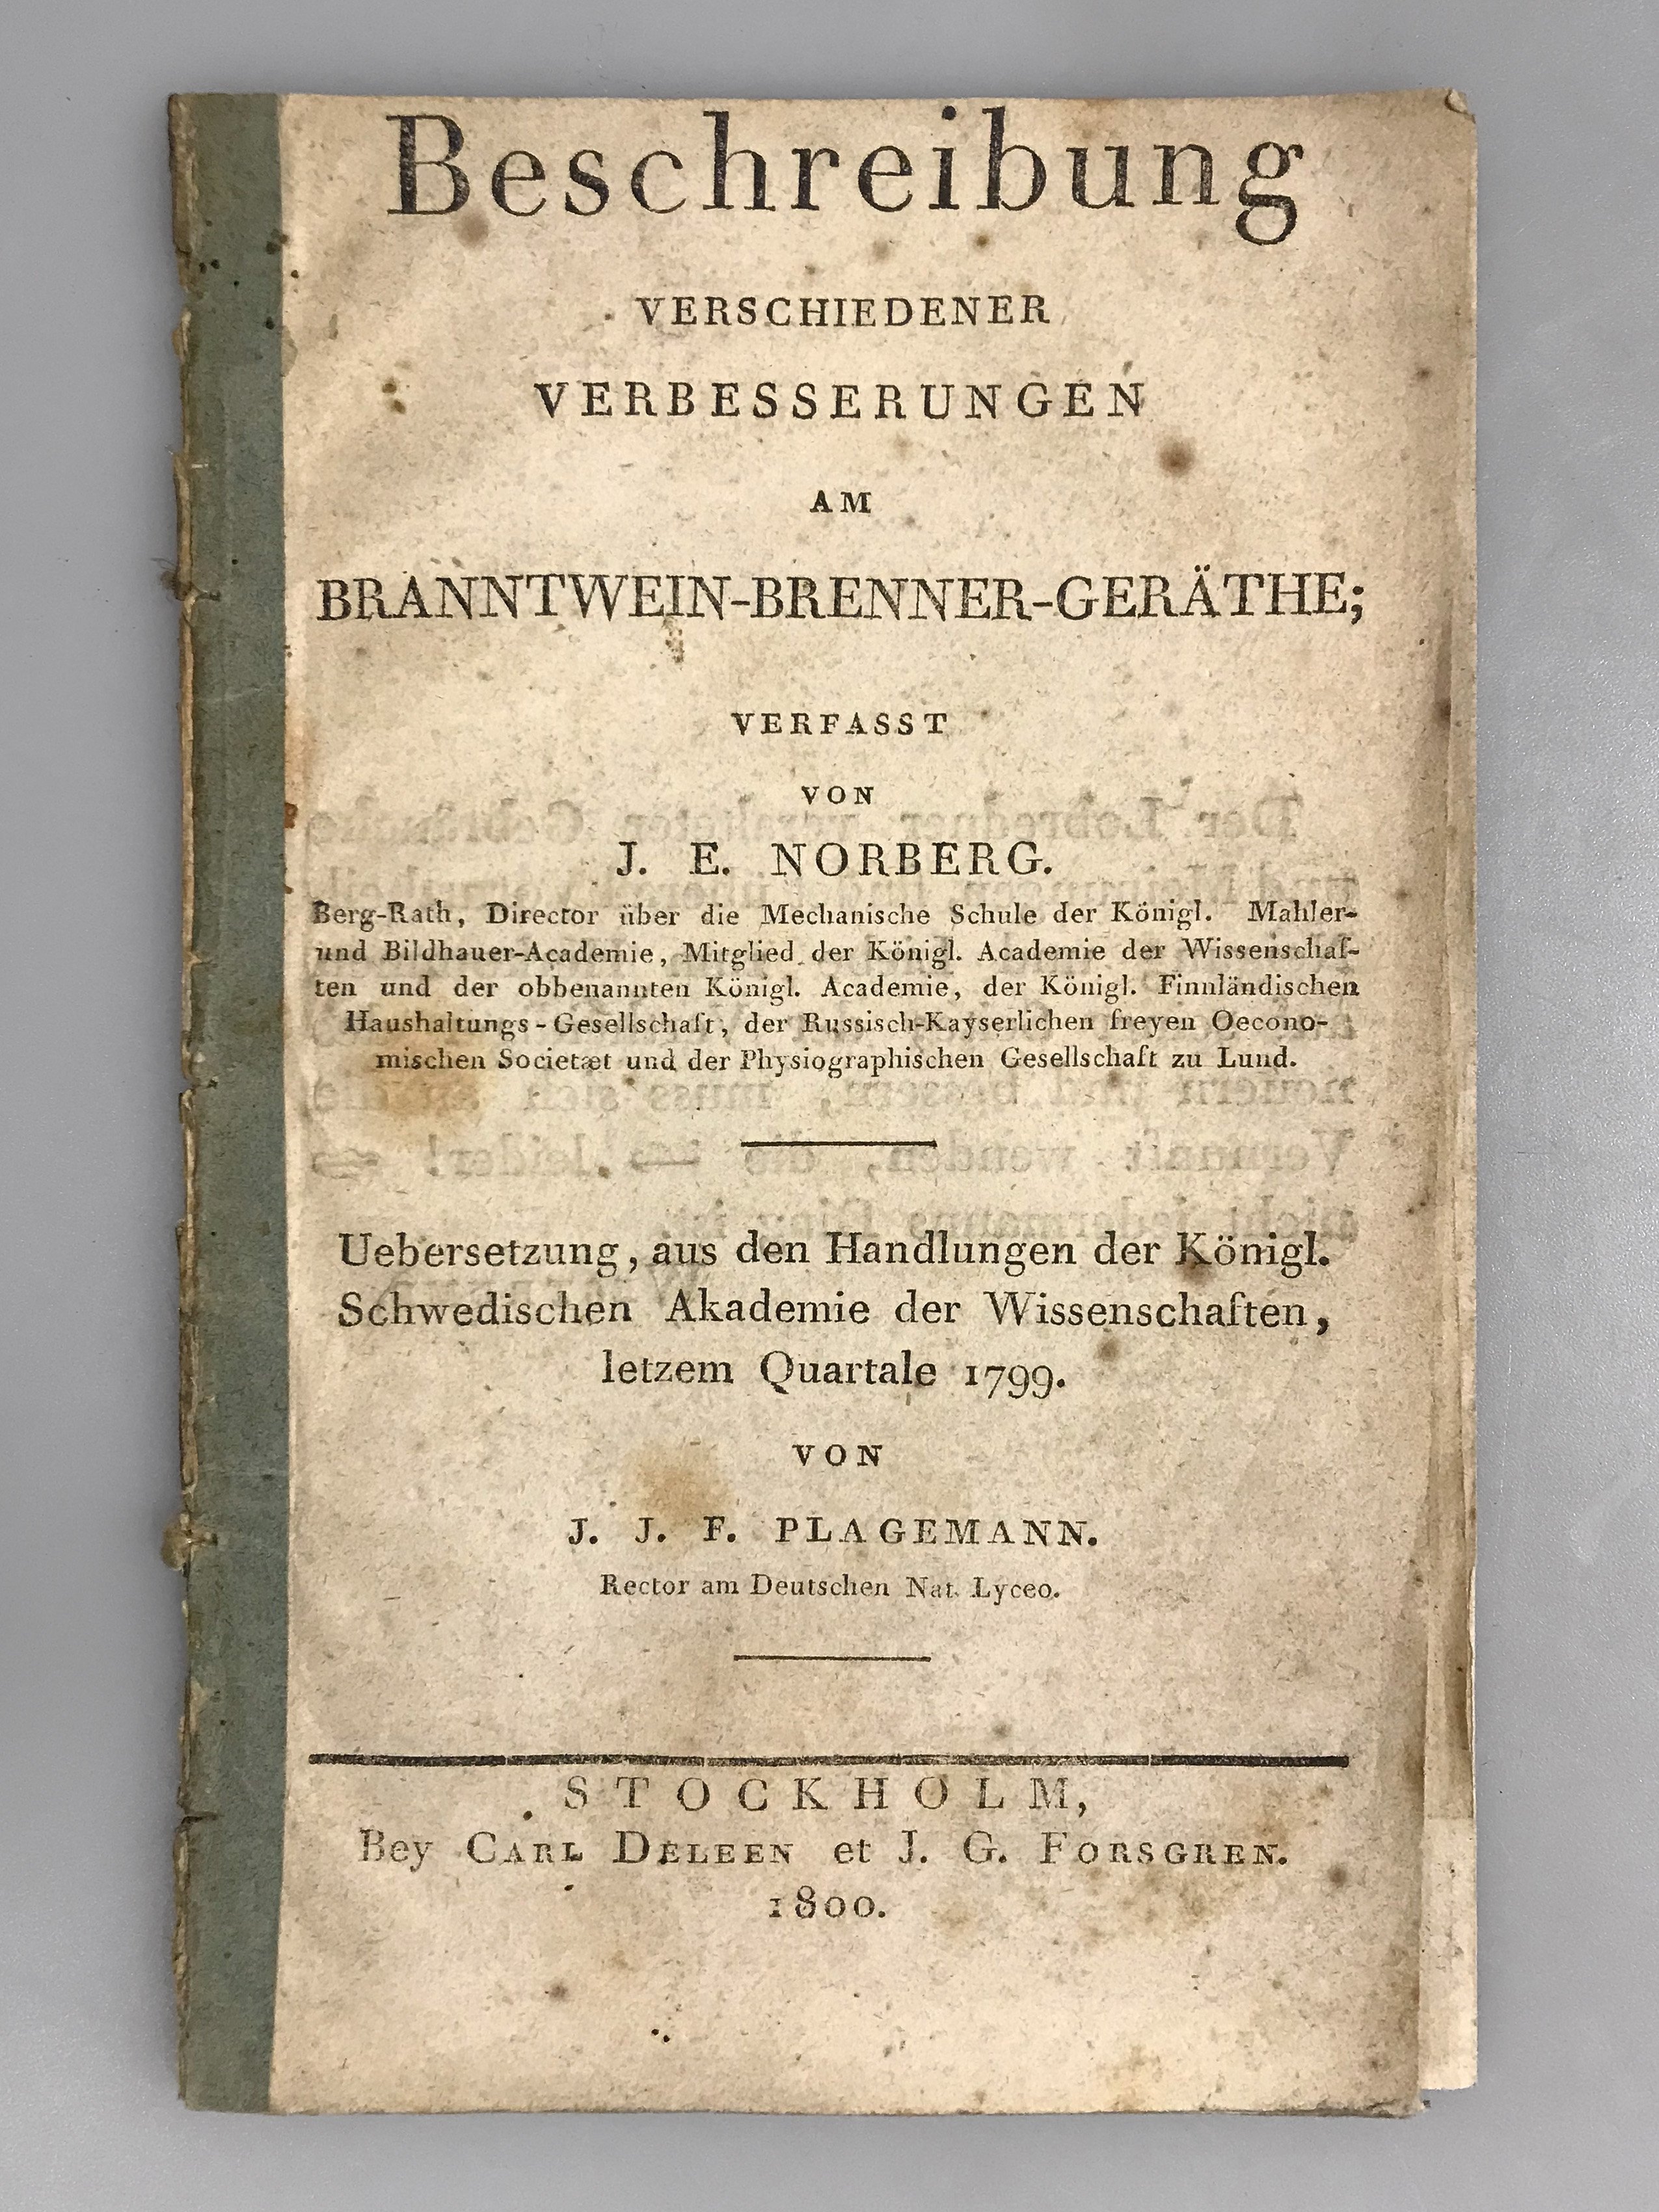 J. E. Norberg: Beschreibung verschiedener Verbesserungen am Branntwein-Brenner-Geräthe (Wilhelm-Fabry-Museum CC BY-NC-SA)